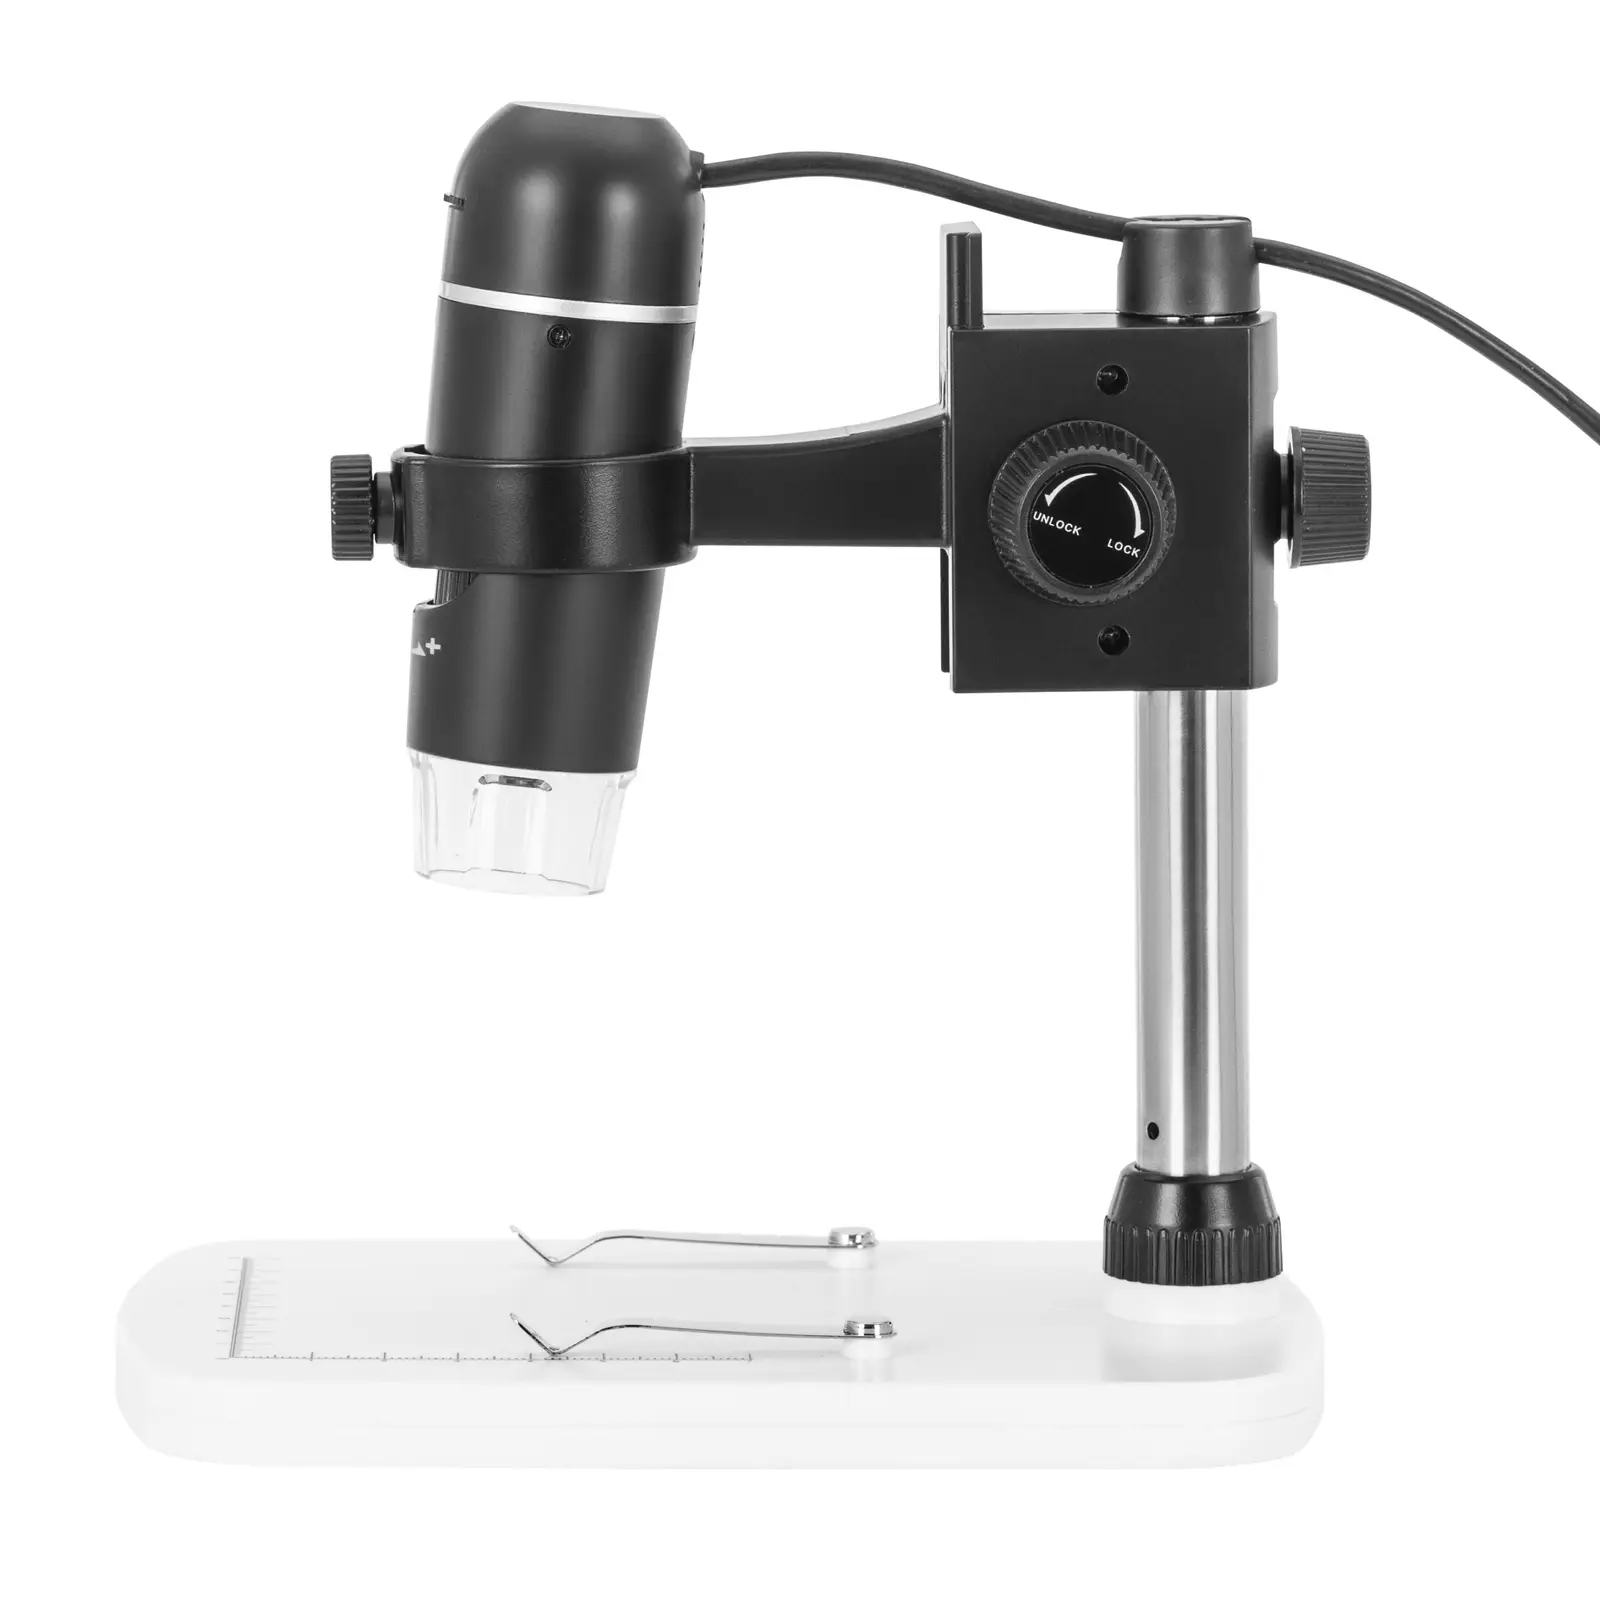 Mikroskop cyfrowy - 10 - 300x - oświetlenie LED - USB